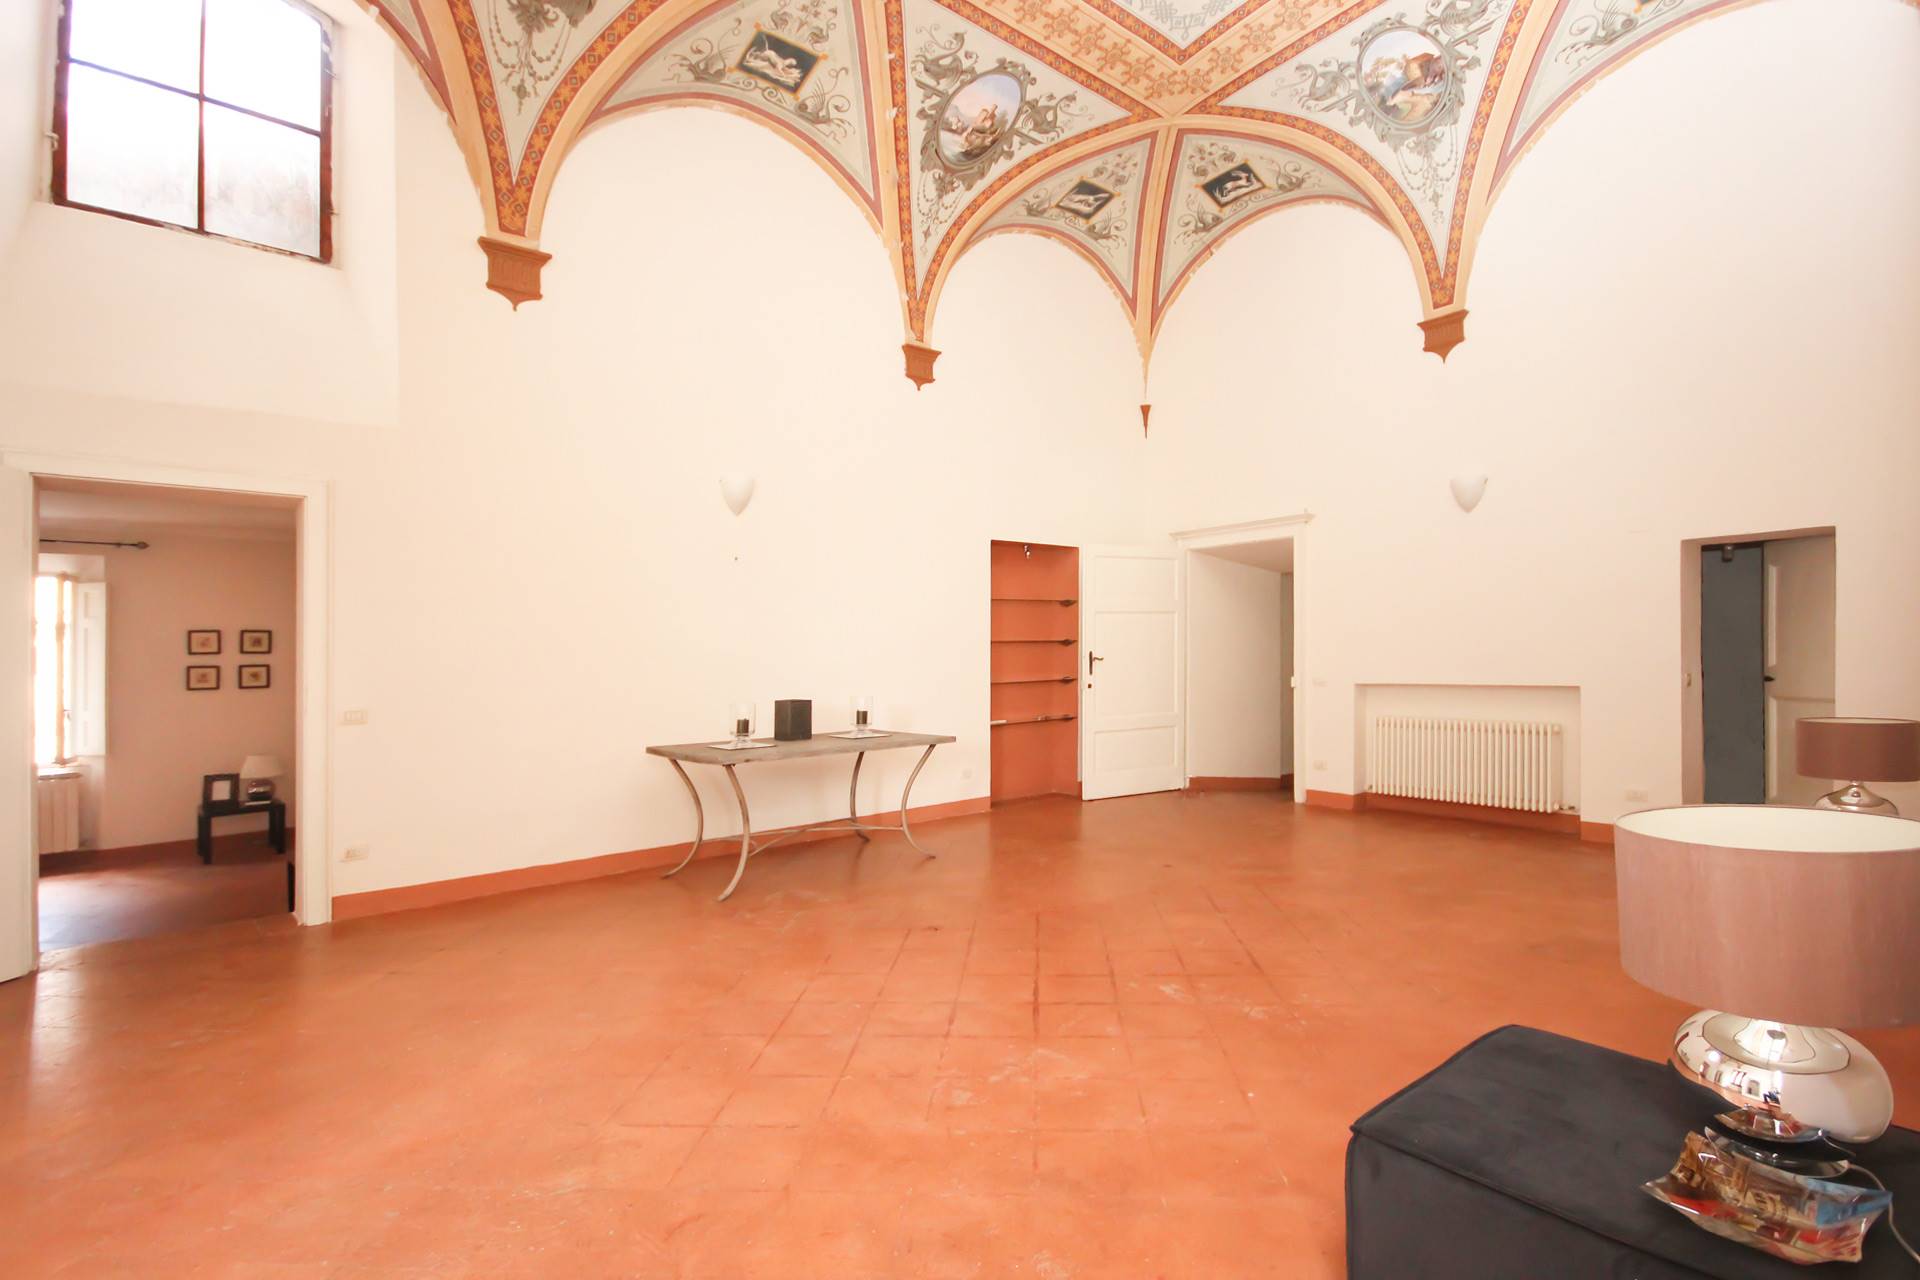 Appartamento di pregio di mq 195, all'interno di un palazzo di interesse storico in una delle vie più in voga di Siena. L’alloggio è posto al secondo 